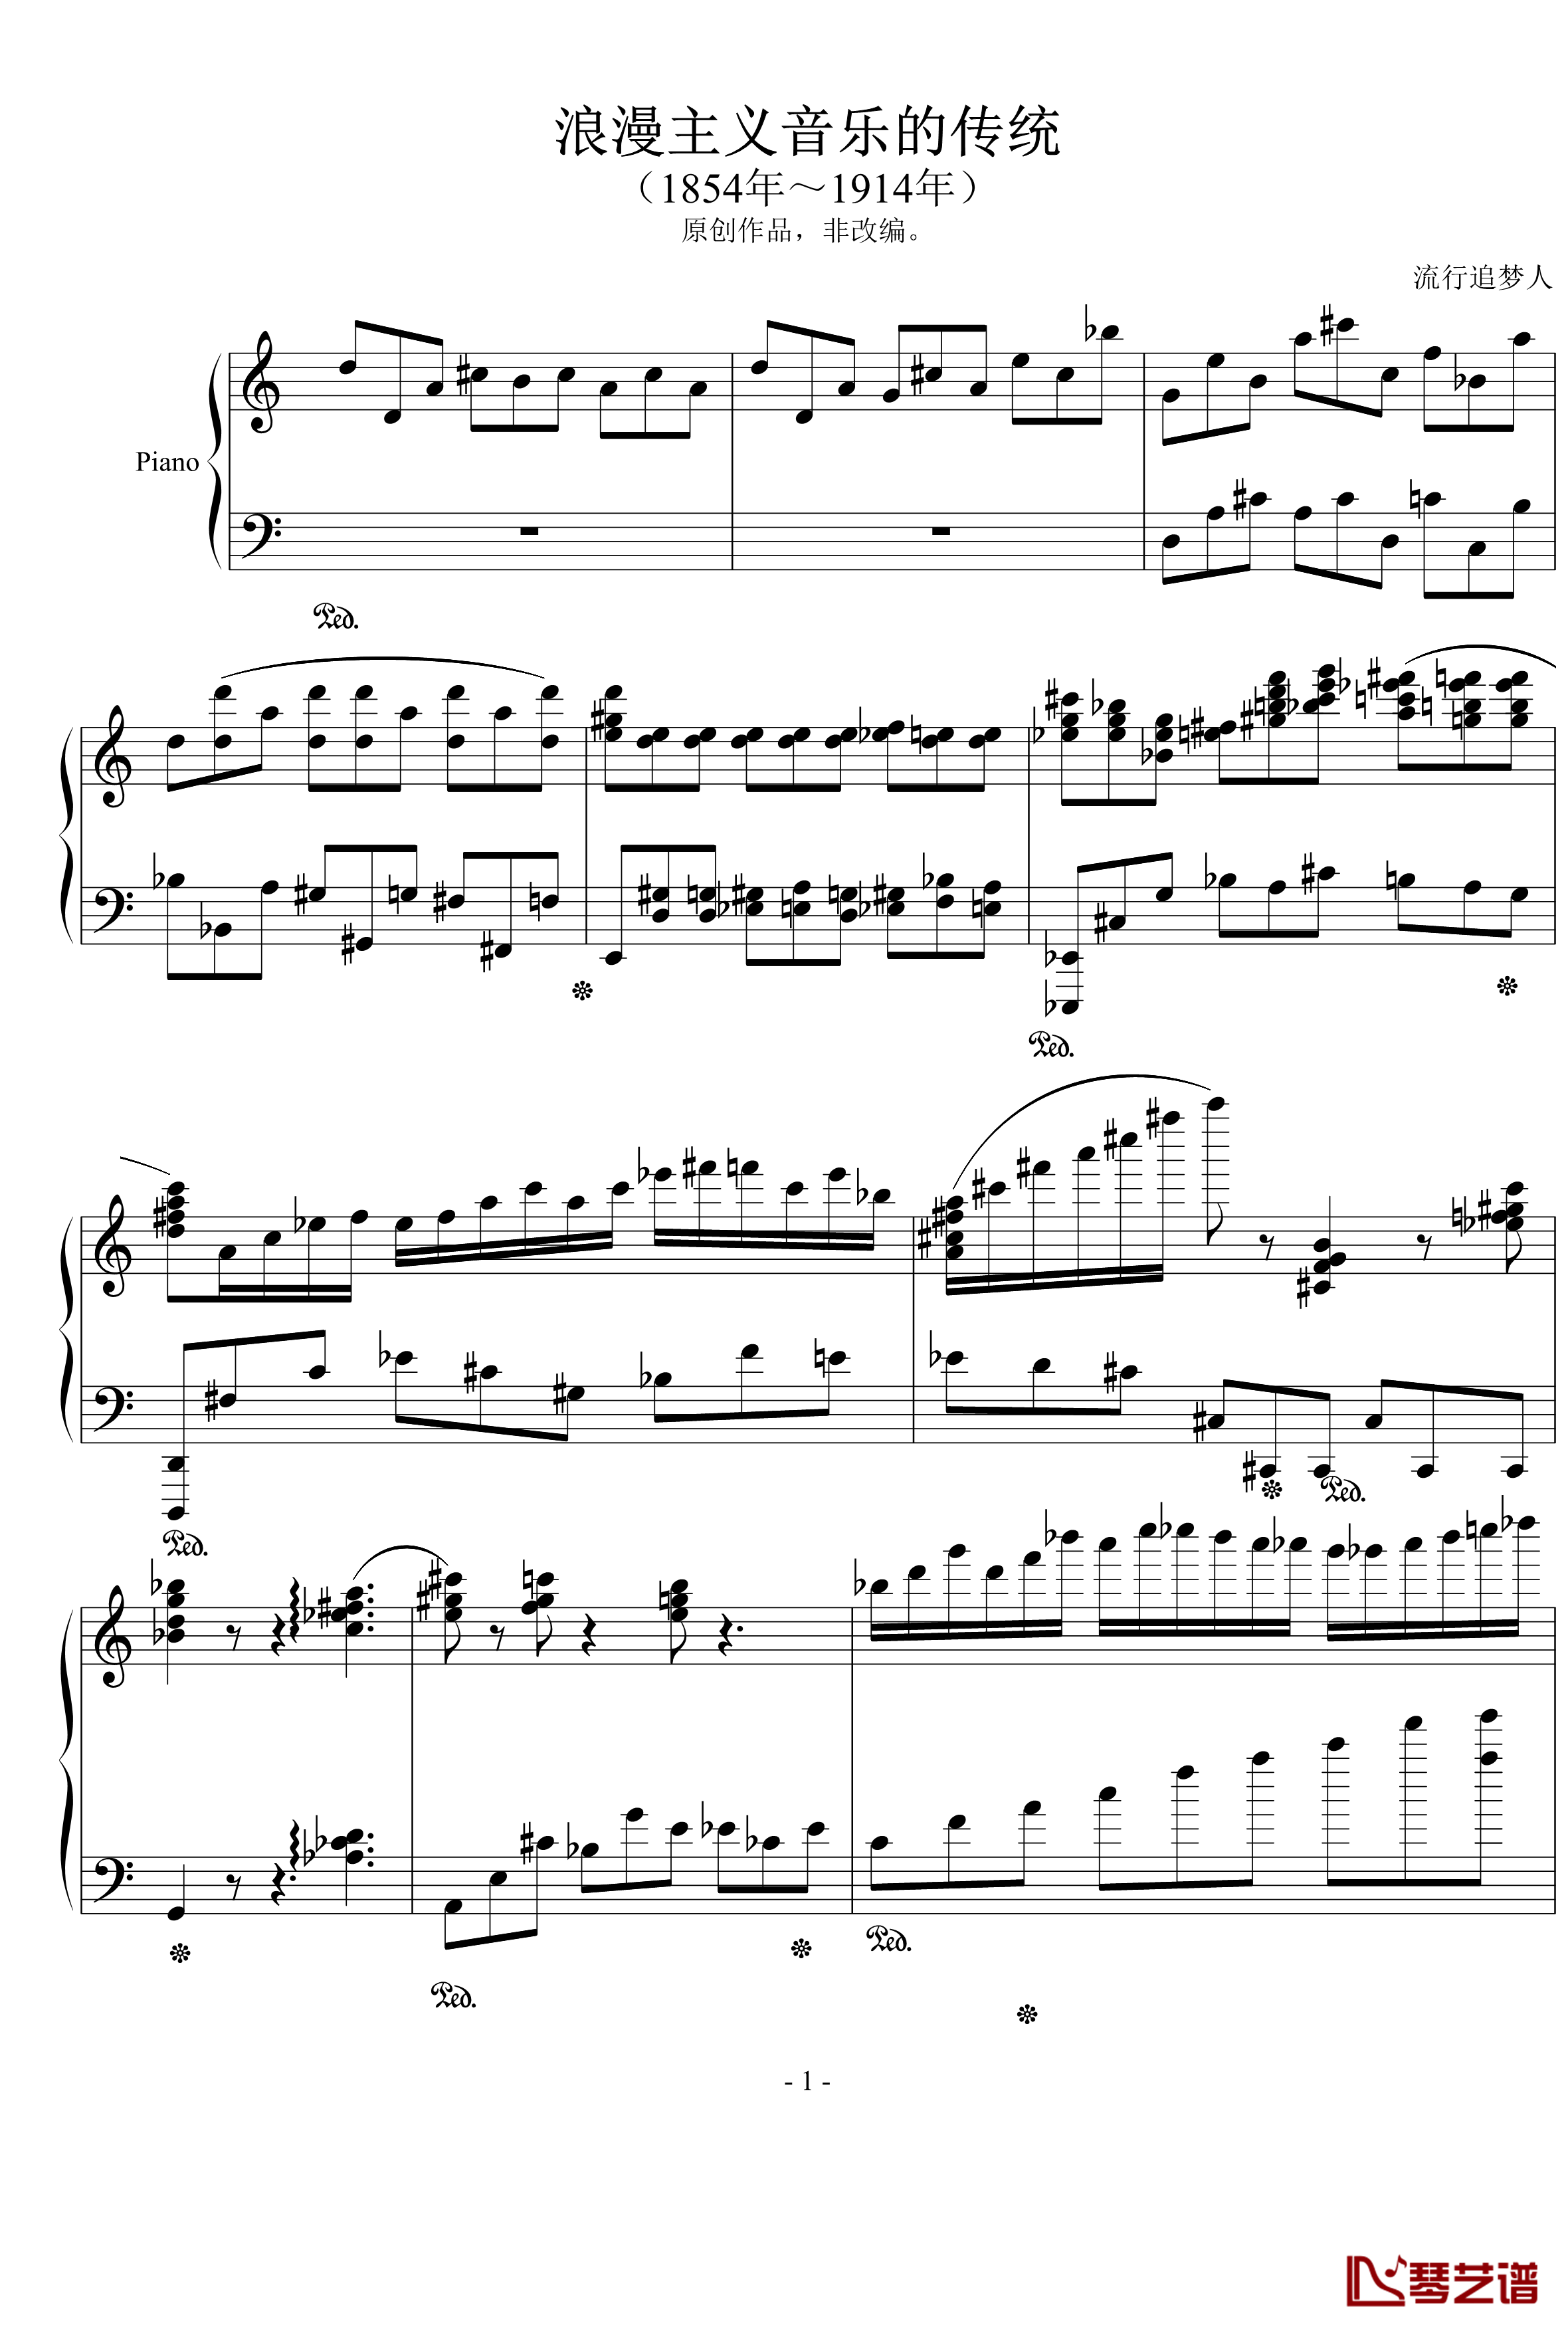 浪漫主义音乐的传统钢琴谱-幻想曲-D大调-流行追梦人